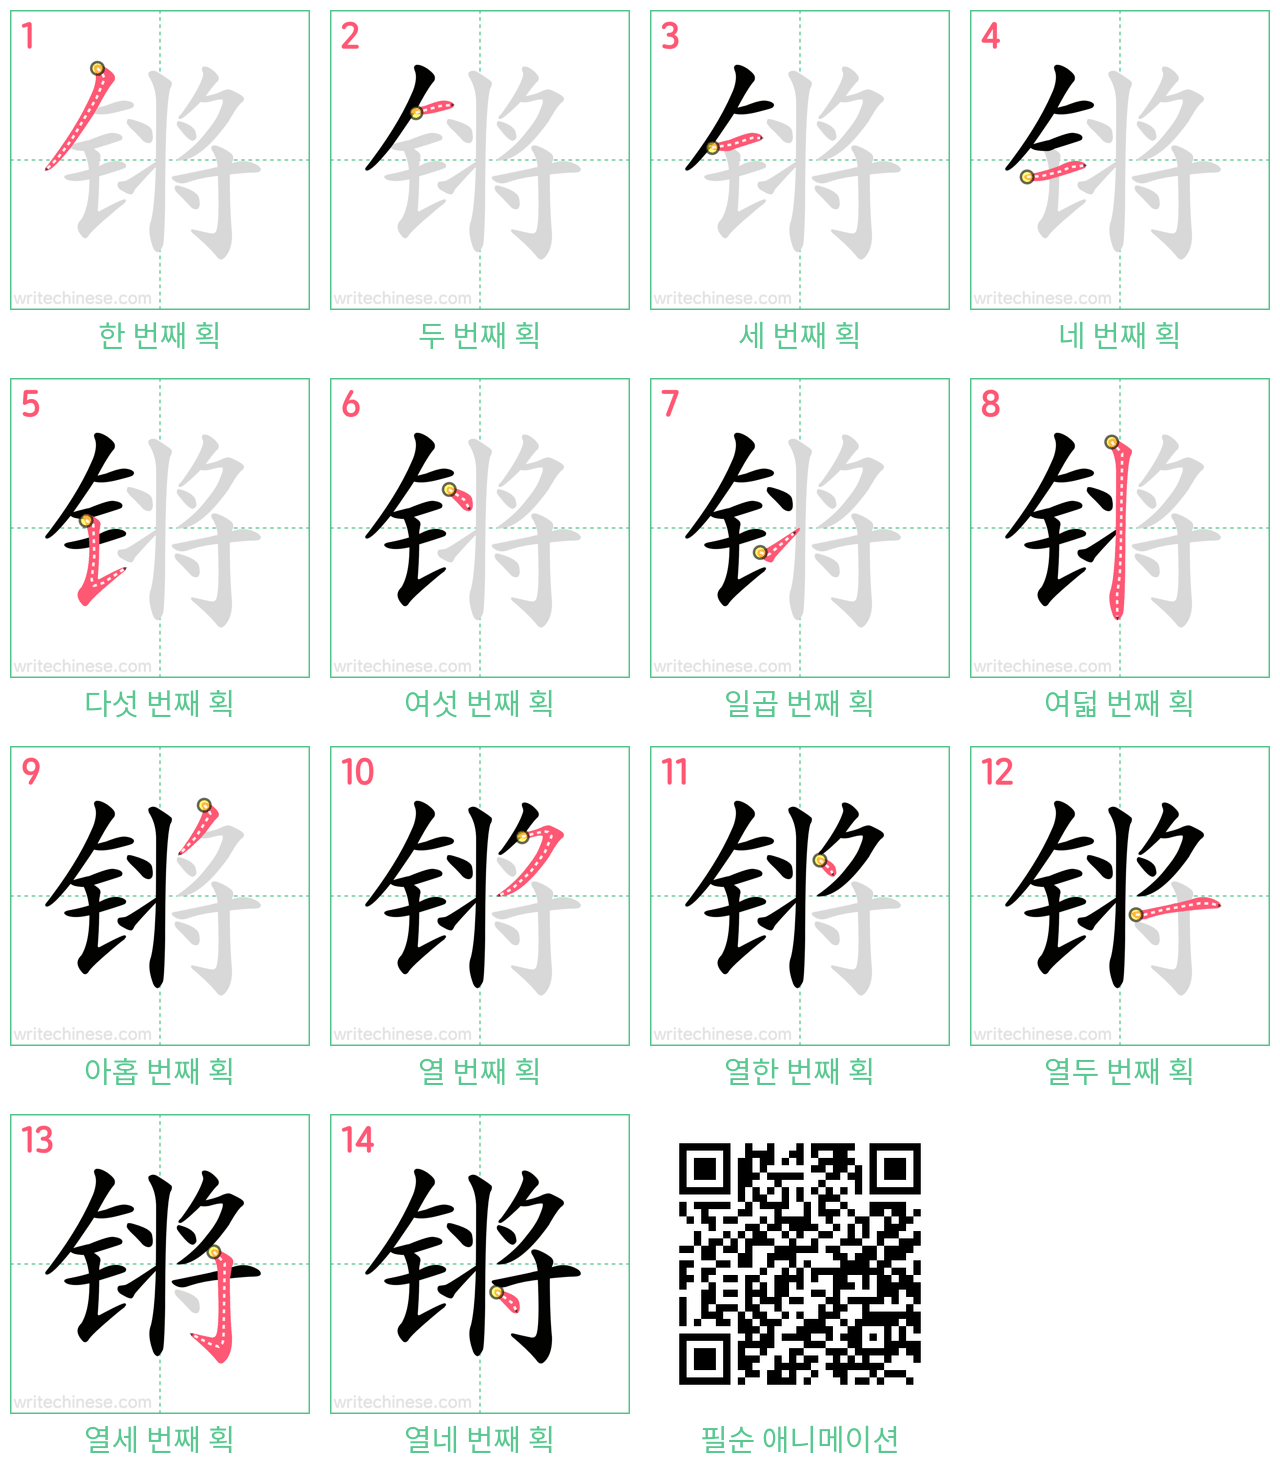 锵 step-by-step stroke order diagrams